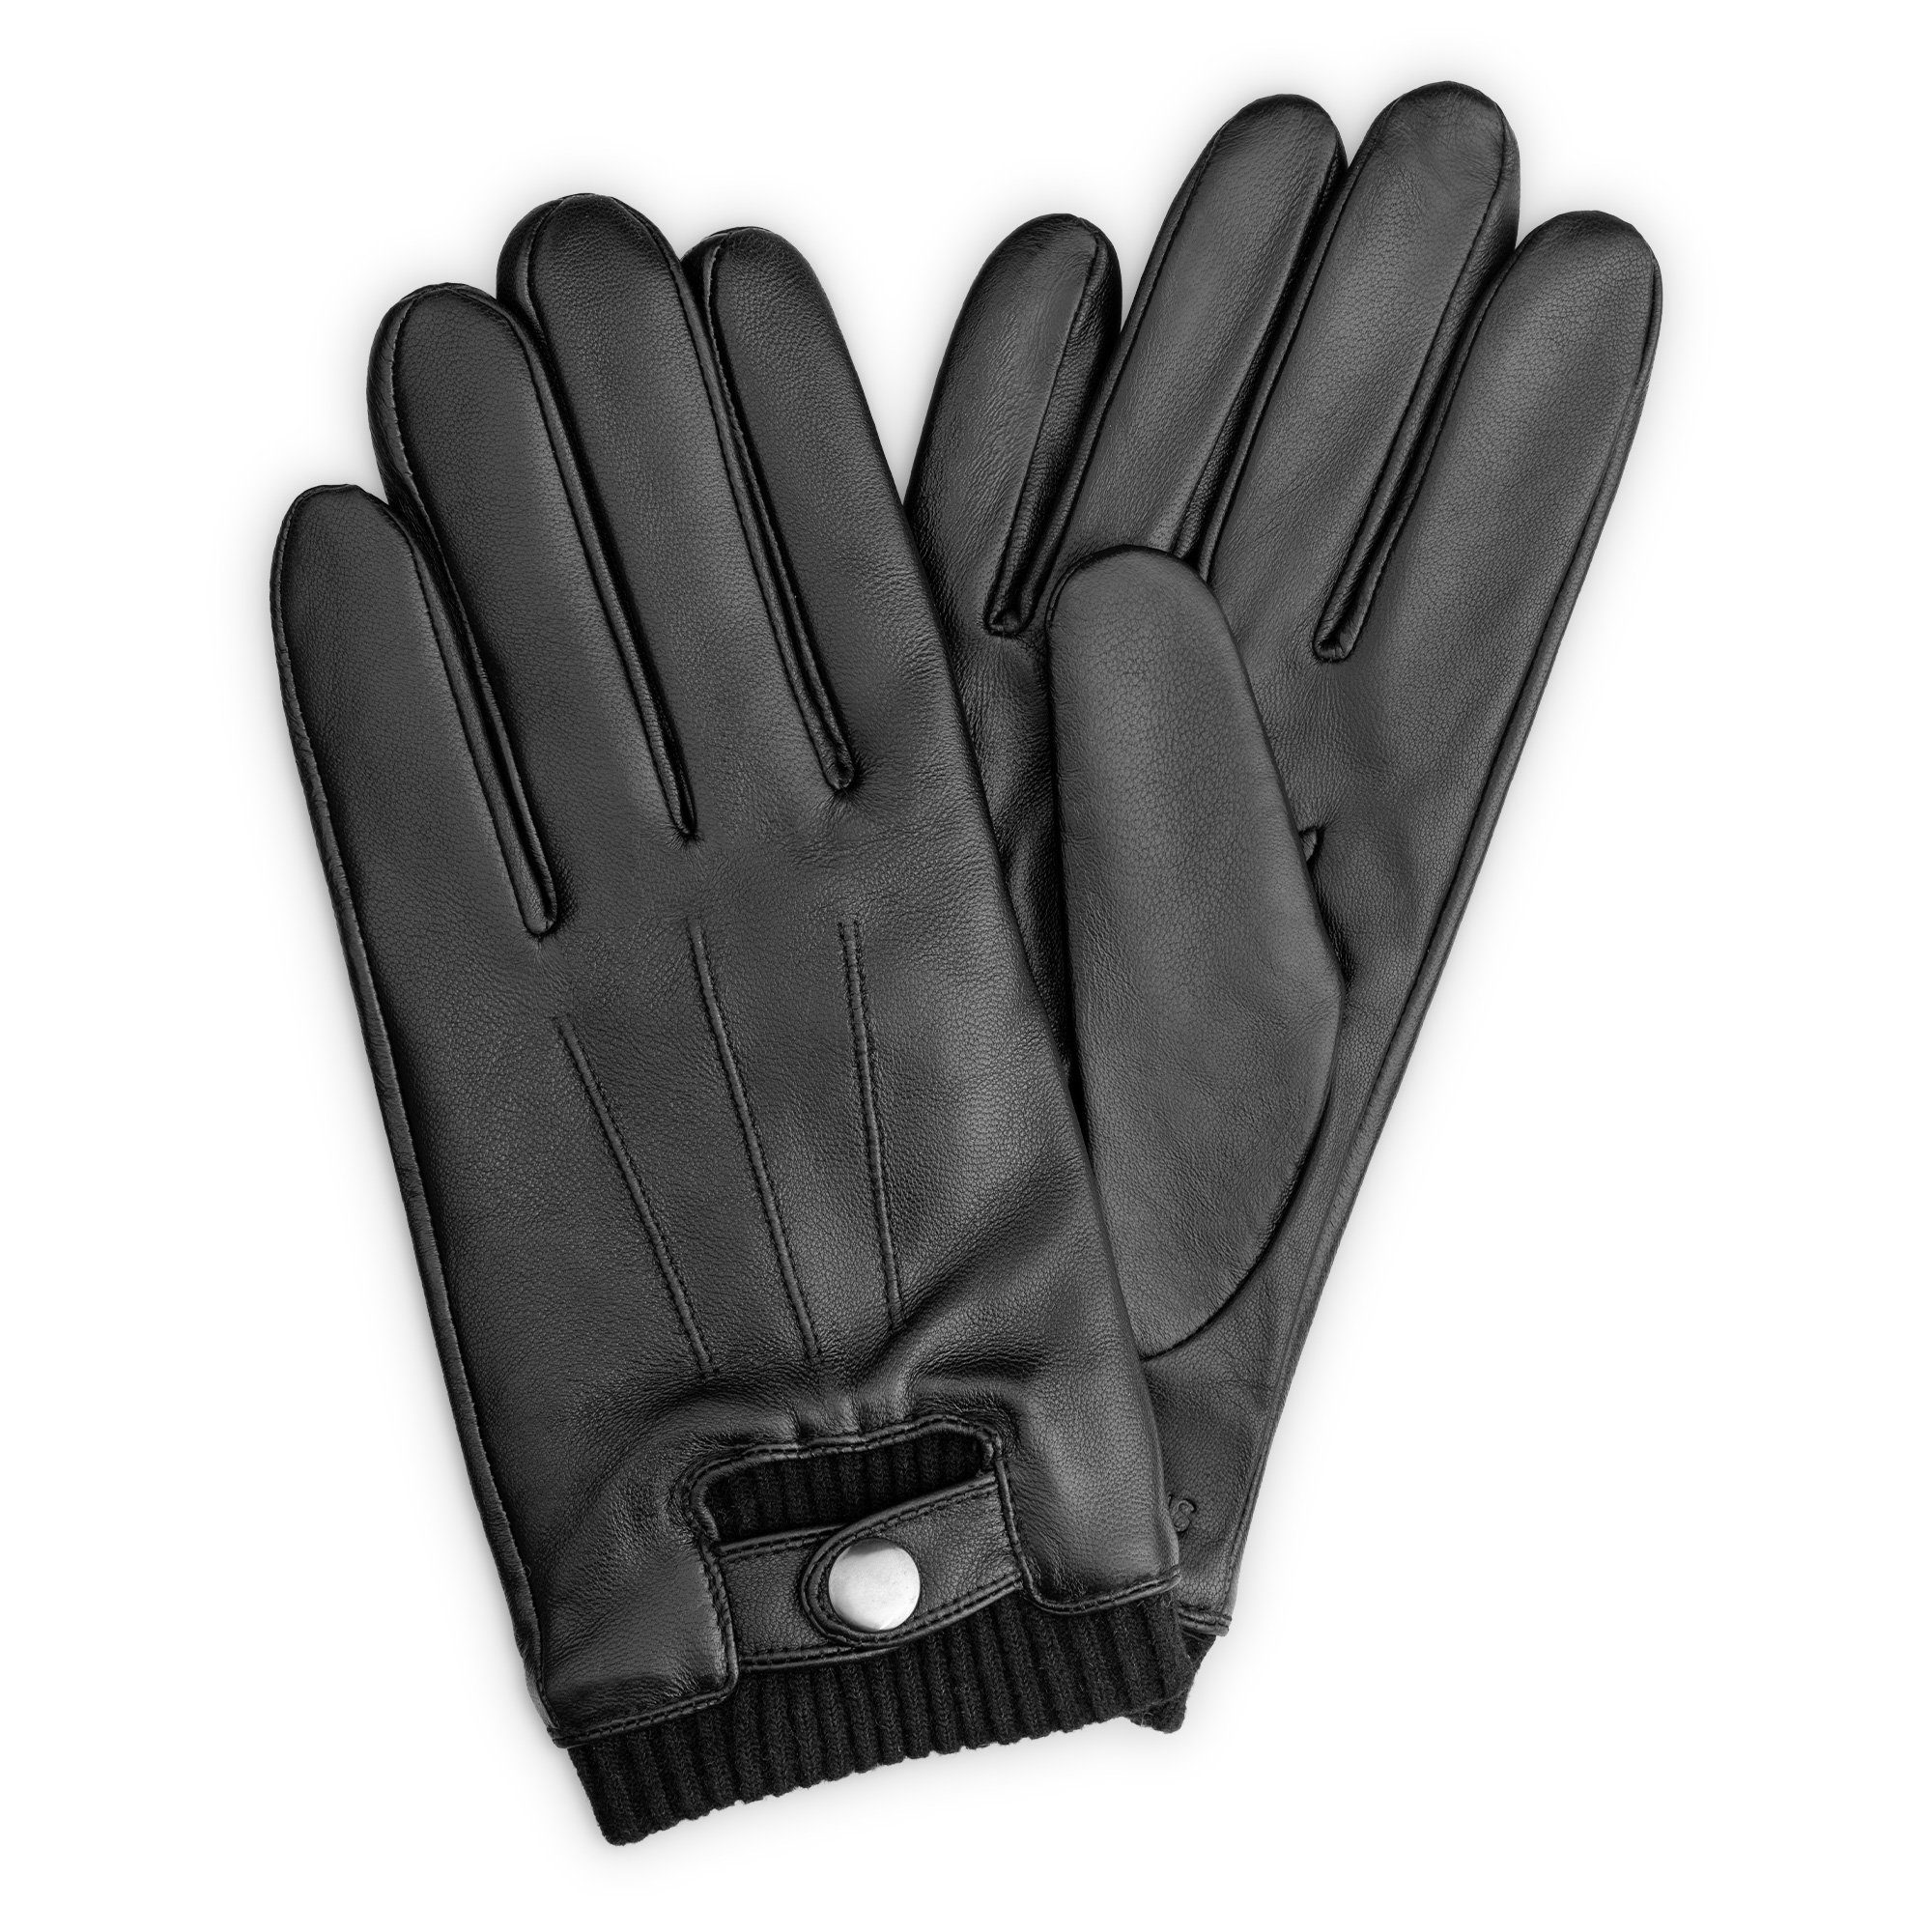 Navaris Lederhandschuhe Touchscreen Leder Handschuhe Herren - Nappa Lammleder - Wolle - L